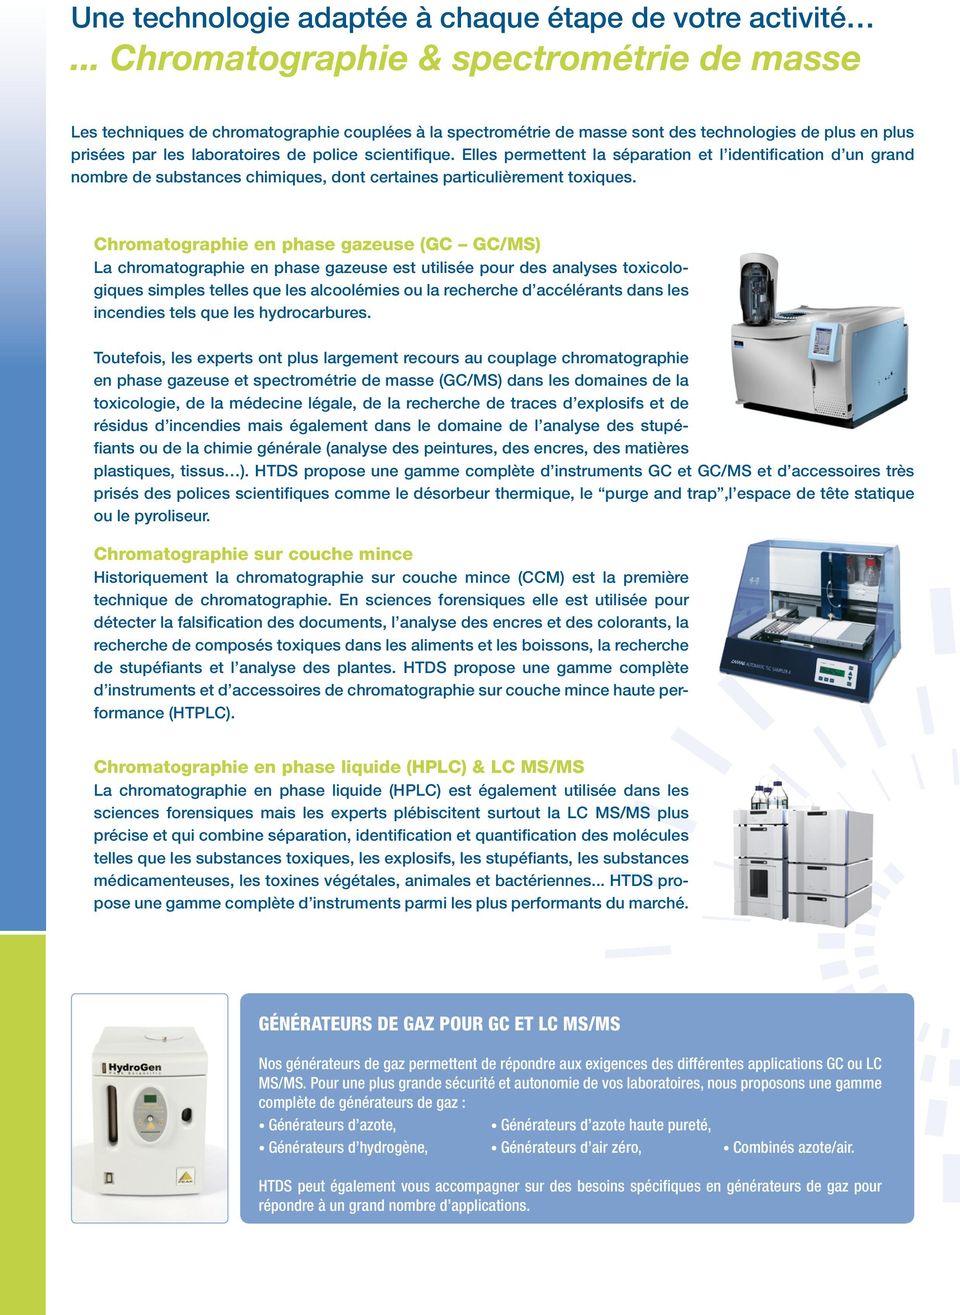 Chromatographie en phase gazeuse (GC GC/MS) La chromatographie en phase gazeuse est utilisée pour des analyses toxicologiques simples telles que les alcoolémies ou la recherche d accélérants dans les